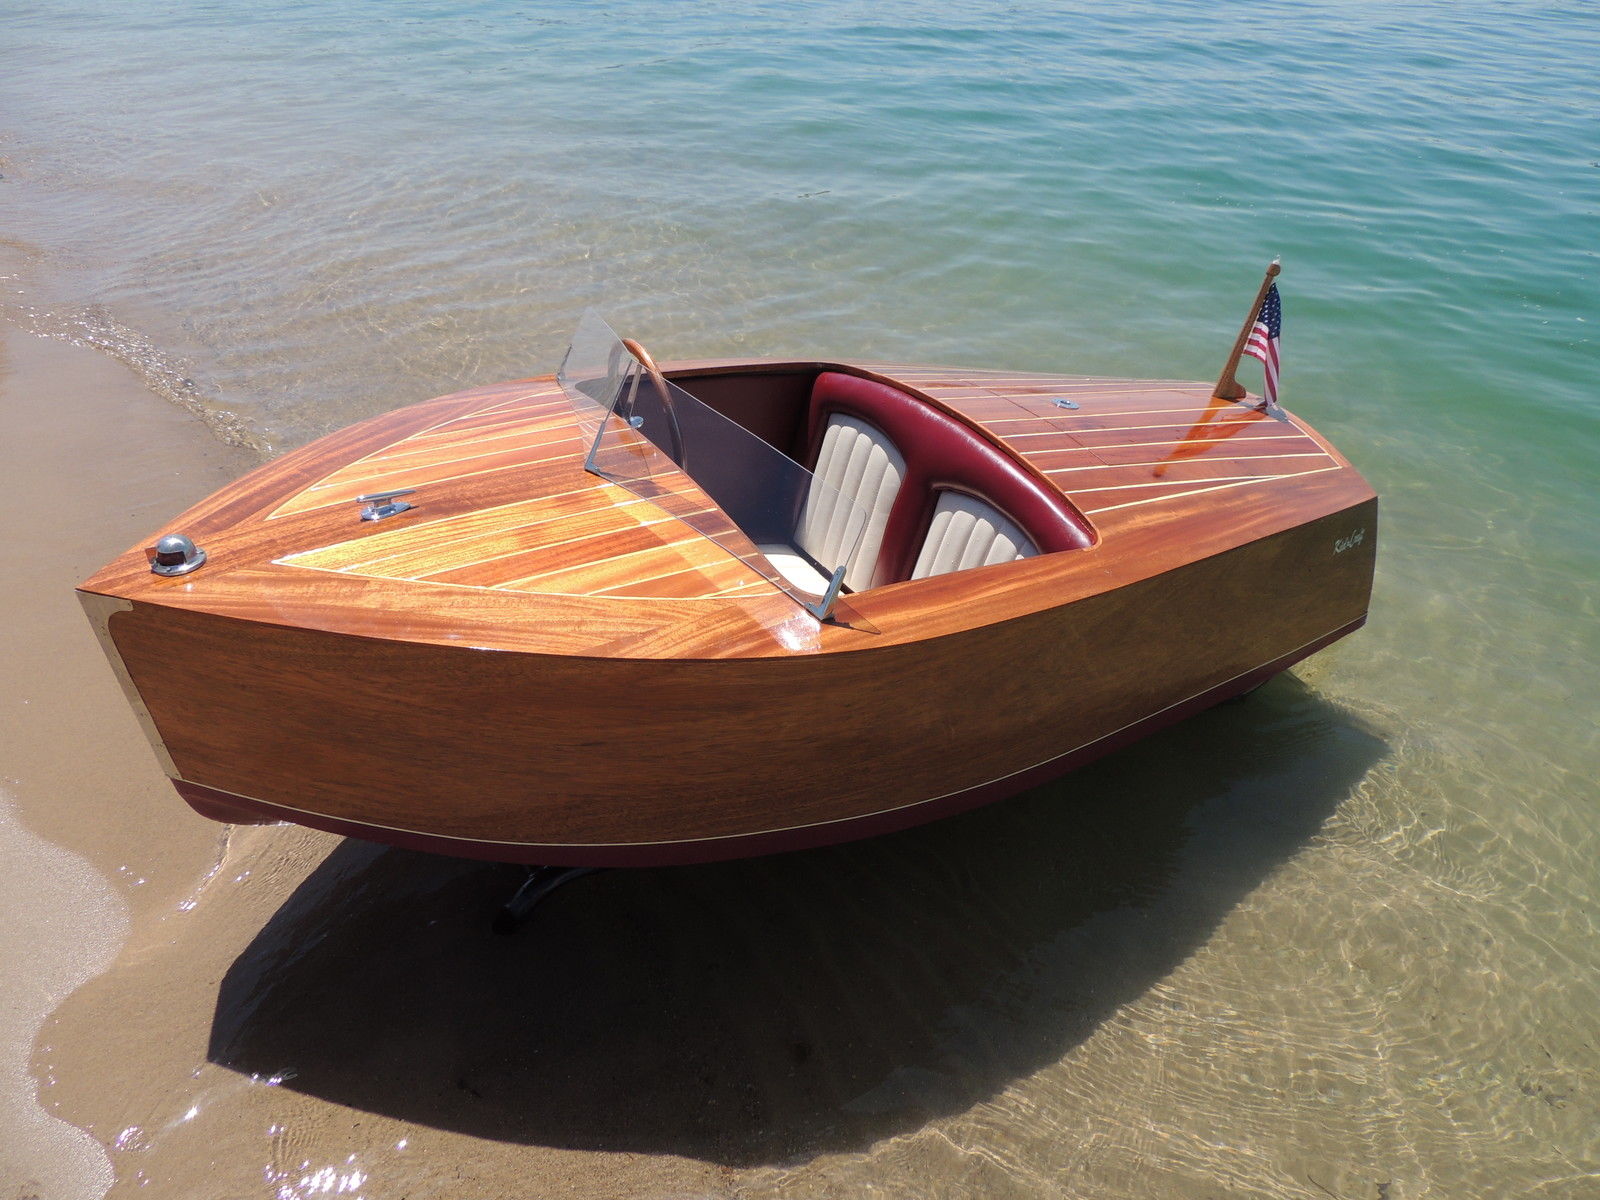 Vente de bateaux : petits bateaux polyvalents pour voyager tranquillement